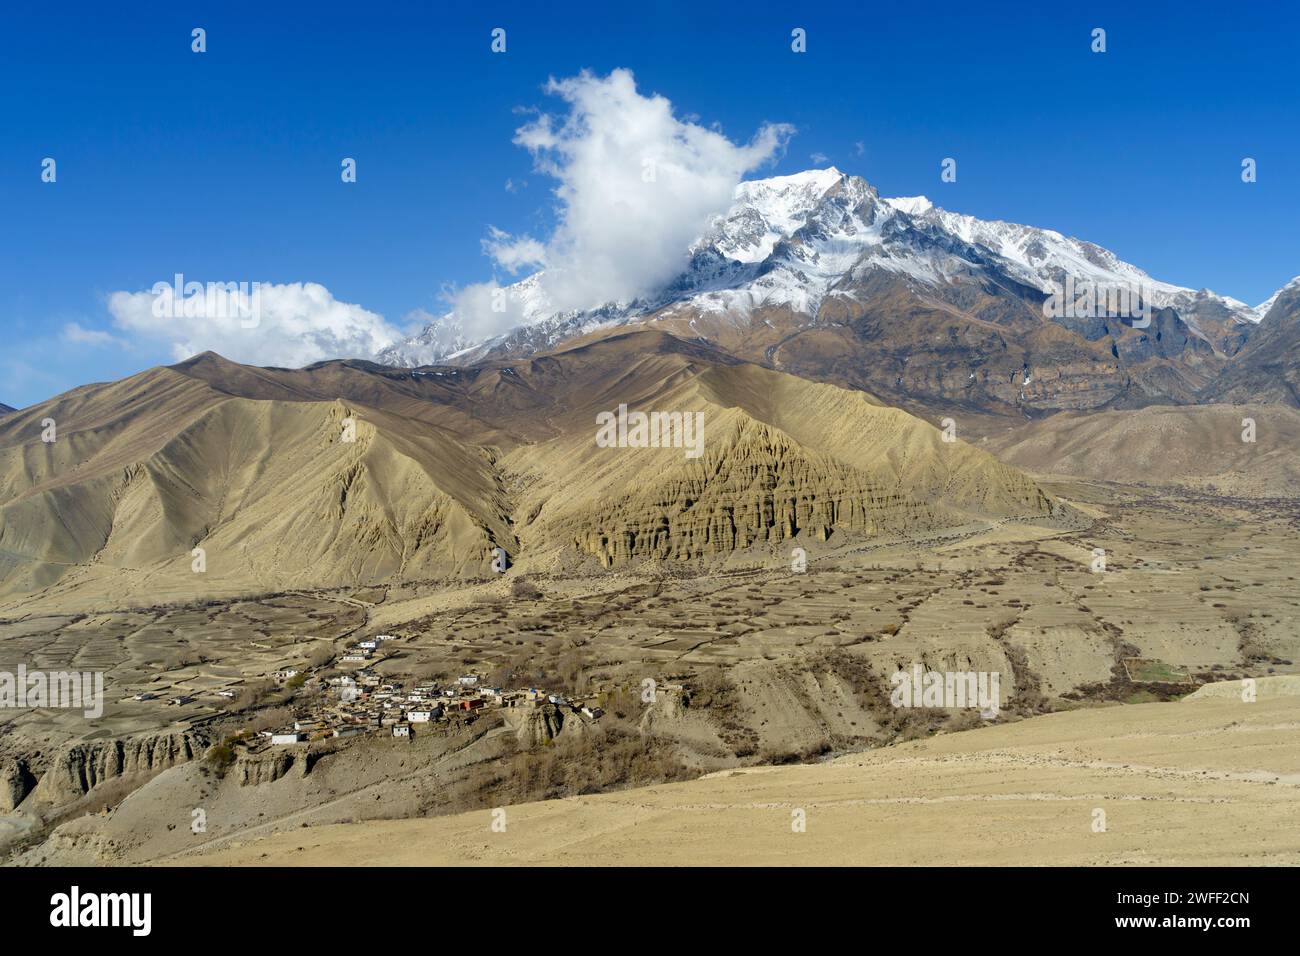 Spettacolare paesaggio desertico con montagne innevate e piccolo villaggio vicino a Dhakmar, regione dell'alto Mustang, Nepal. Foto Stock